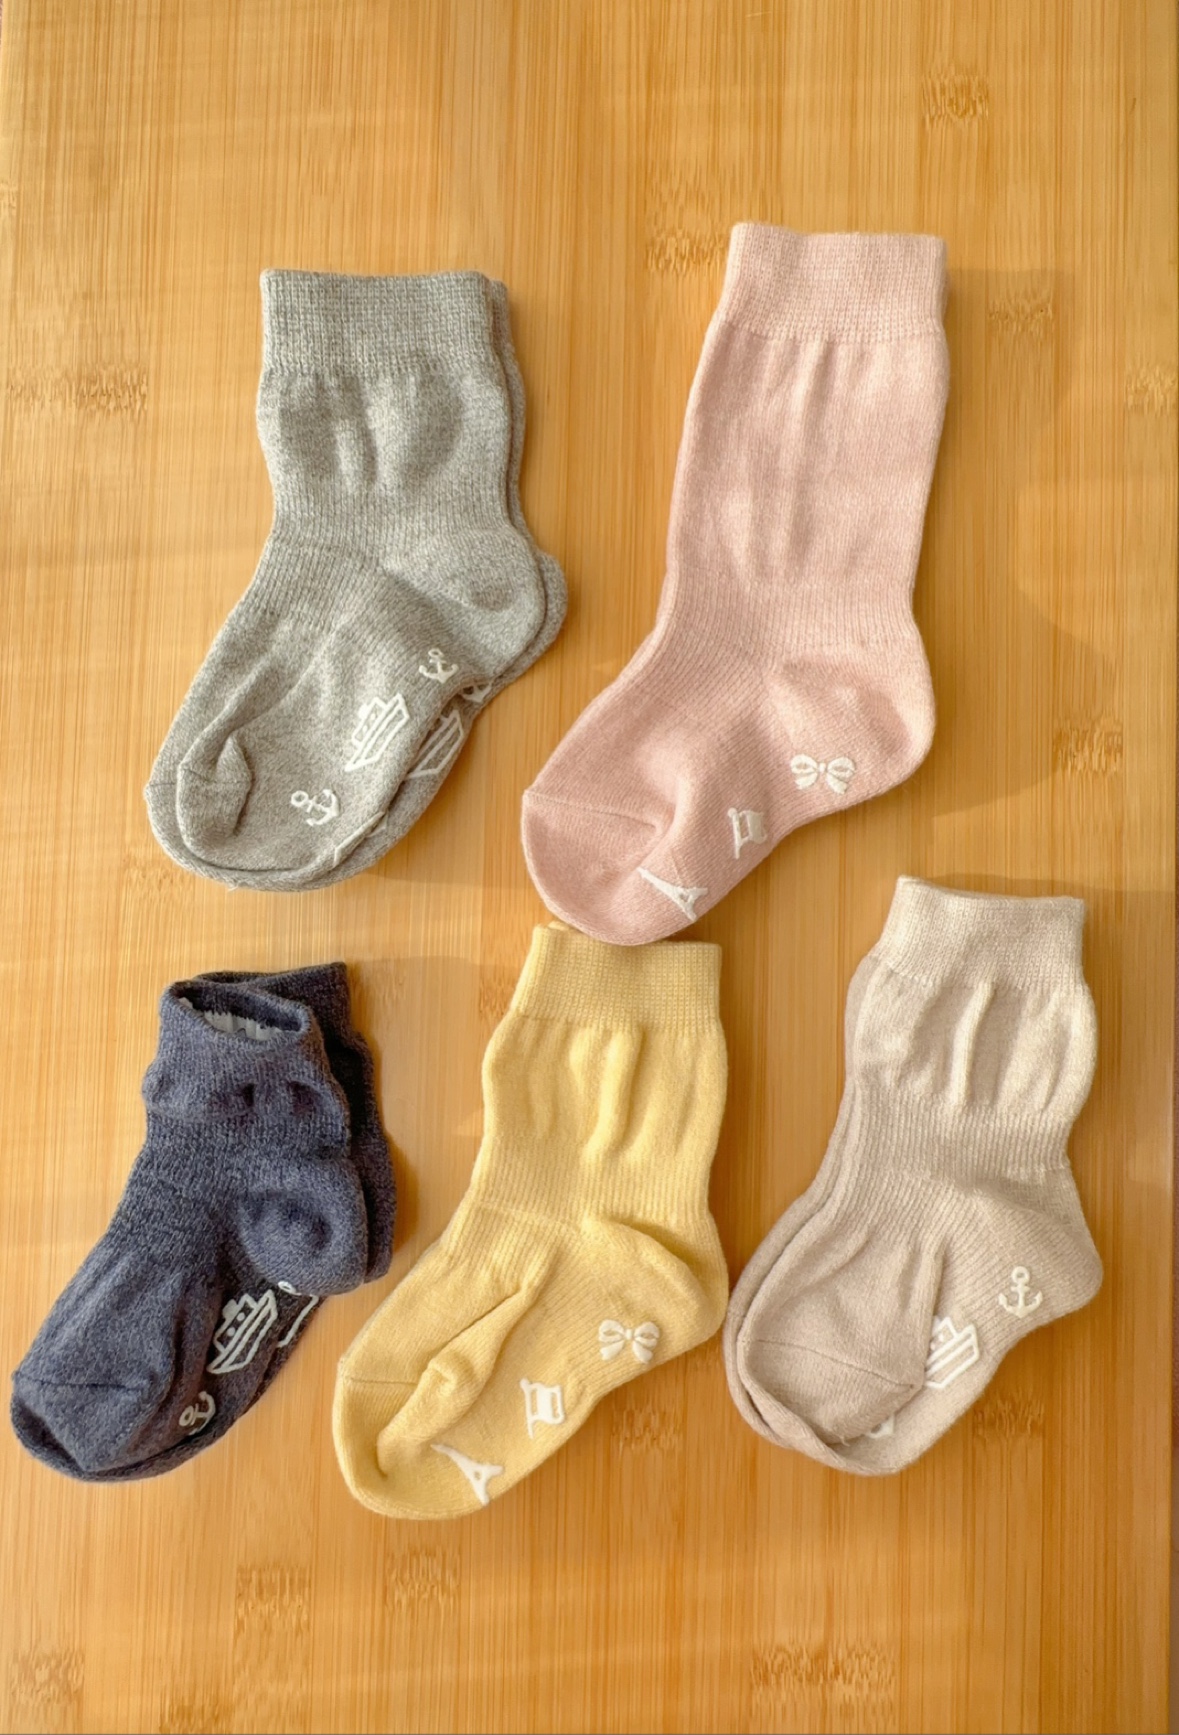 0-3岁日本千家纯棉质男女宝宝婴儿童袜子中短筒袜子点胶防滑不勒